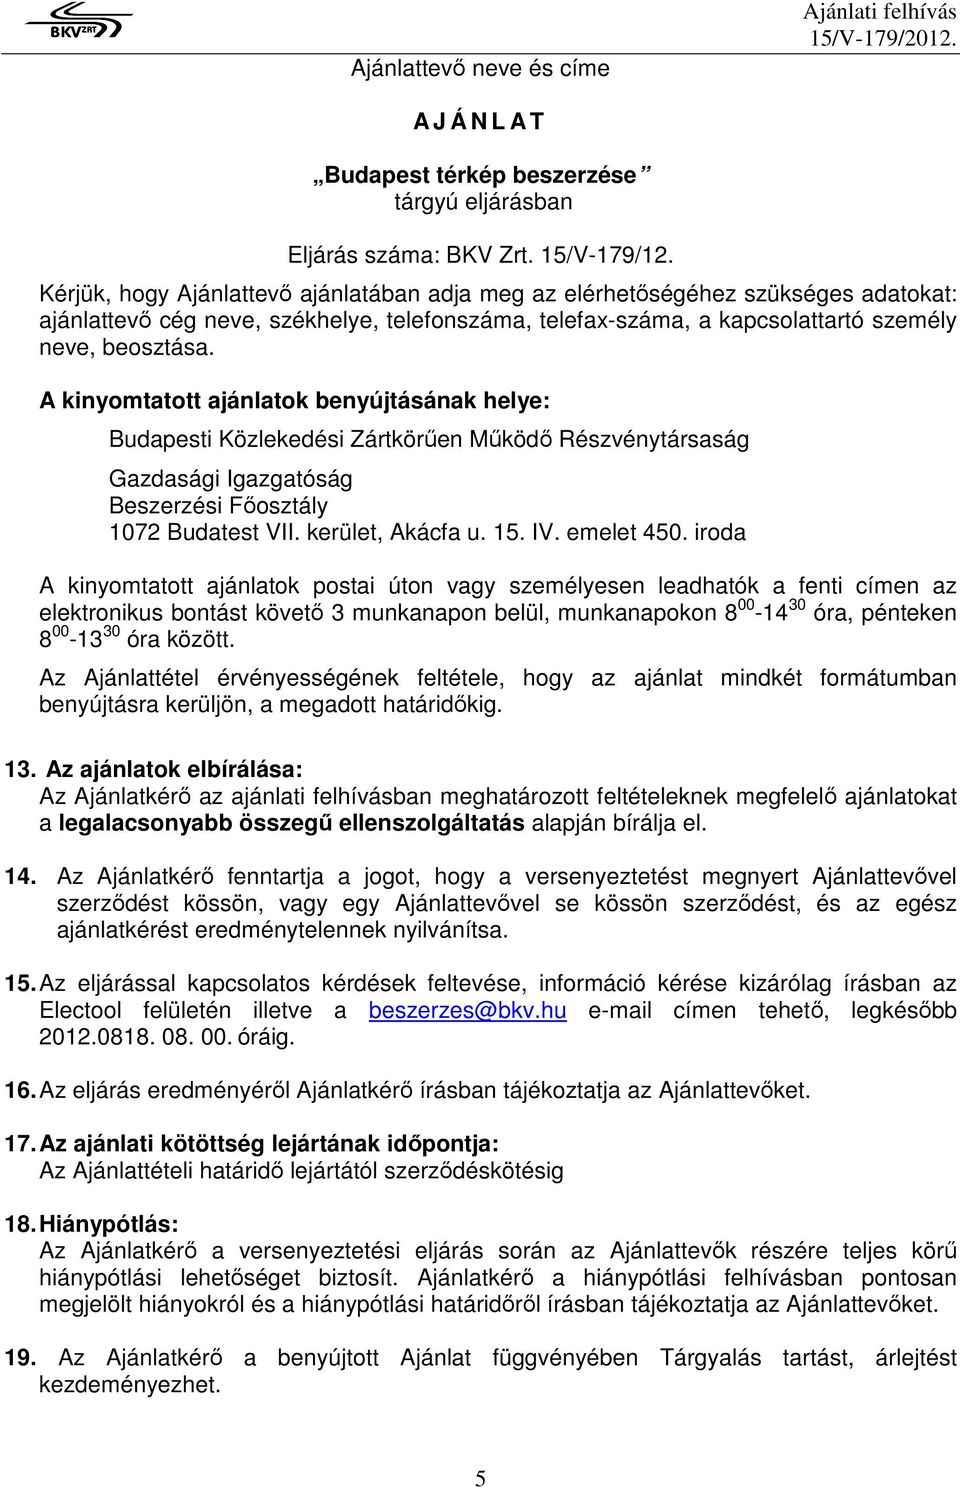 A kinyomtatott ajánlatok benyújtásának helye: Budapesti Közlekedési Zártkörűen Működő Részvénytársaság Gazdasági Igazgatóság Beszerzési Főosztály 1072 Budatest VII. kerület, Akácfa u. 15. IV.